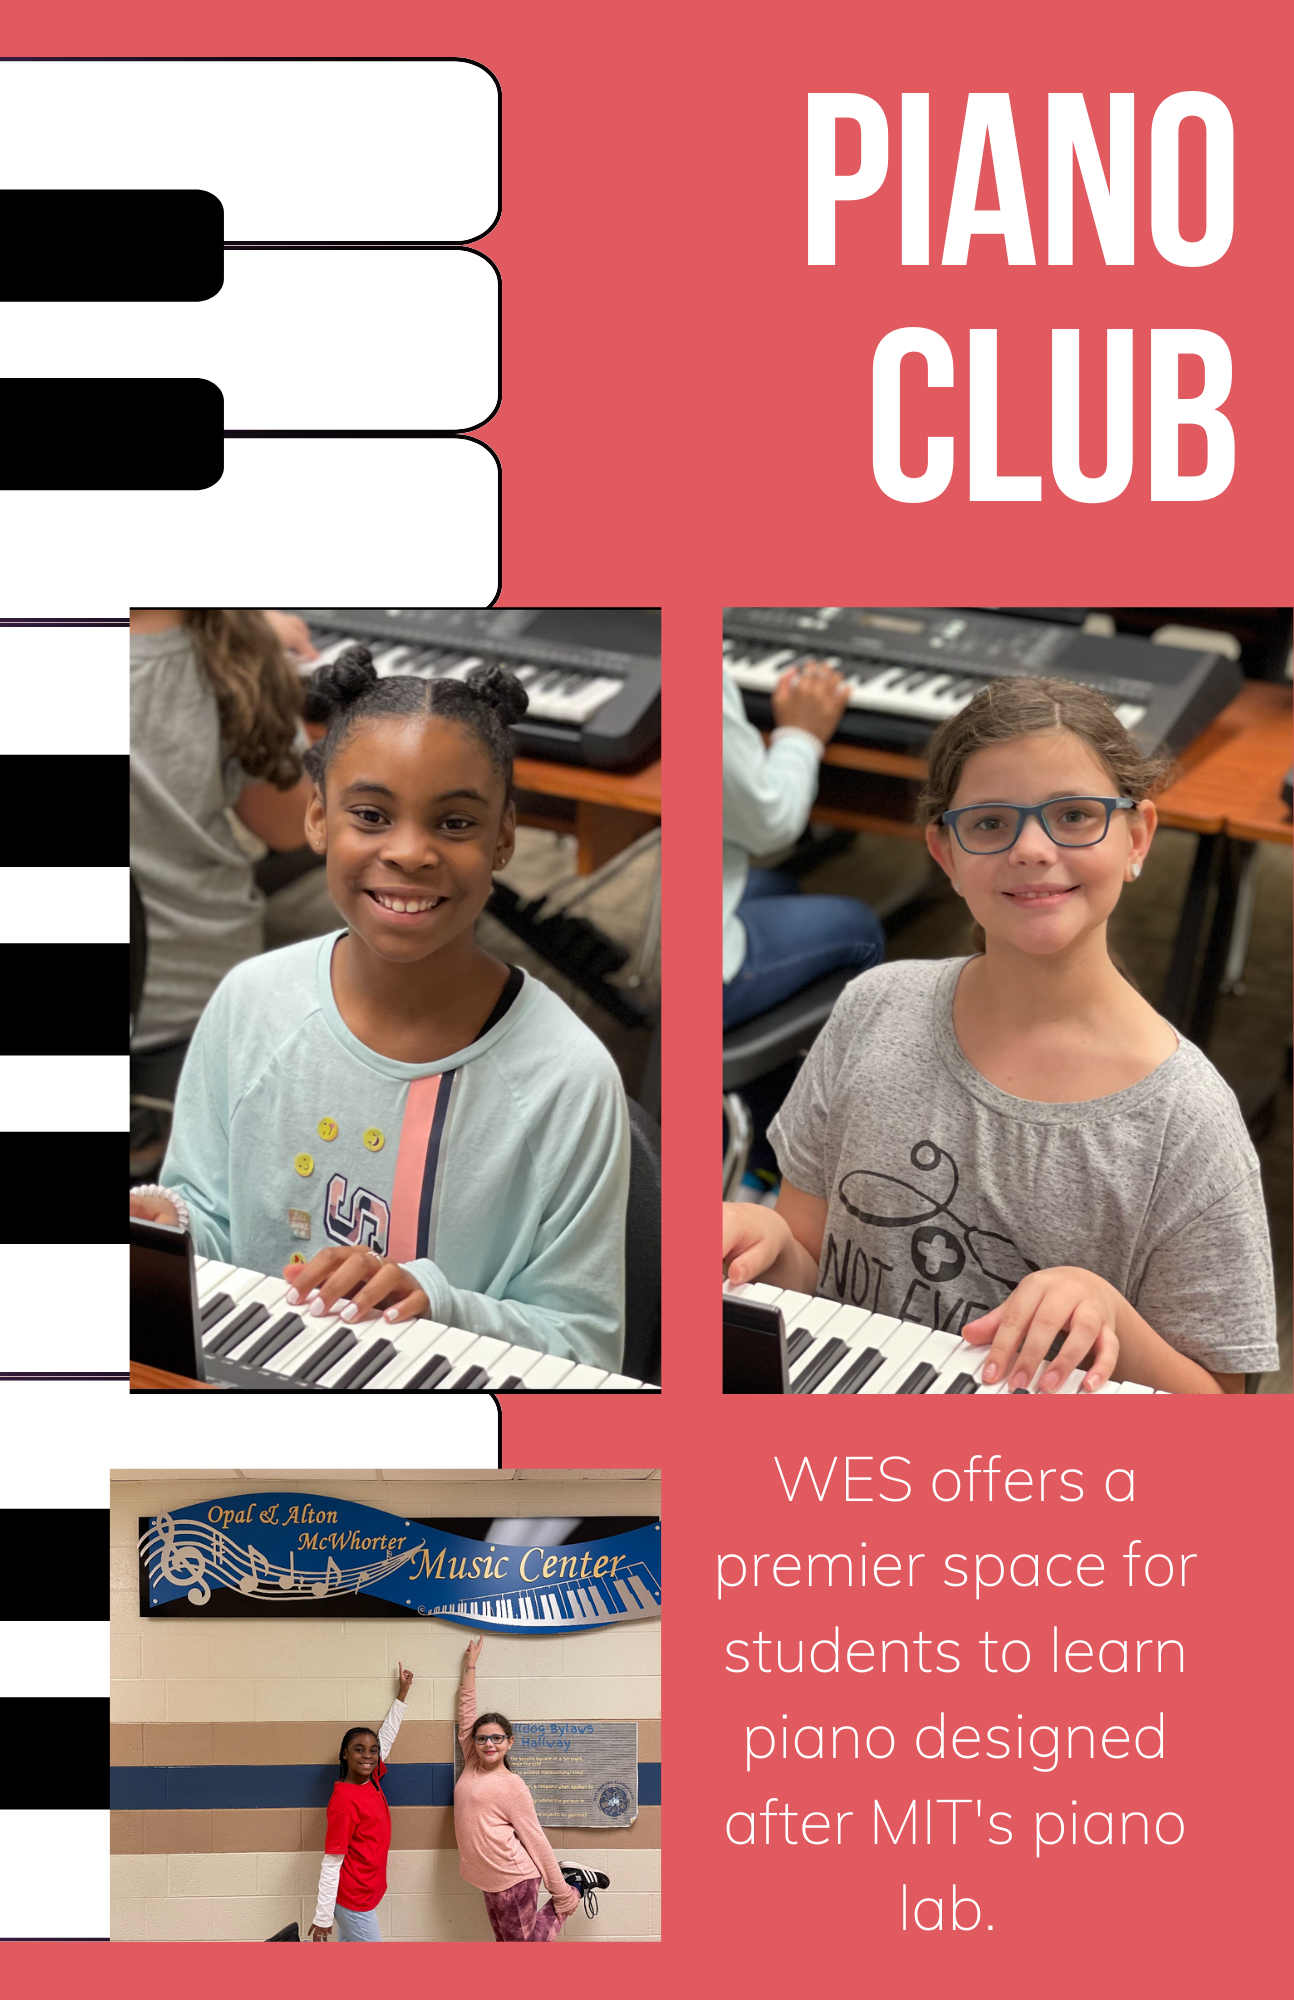 Piano Club